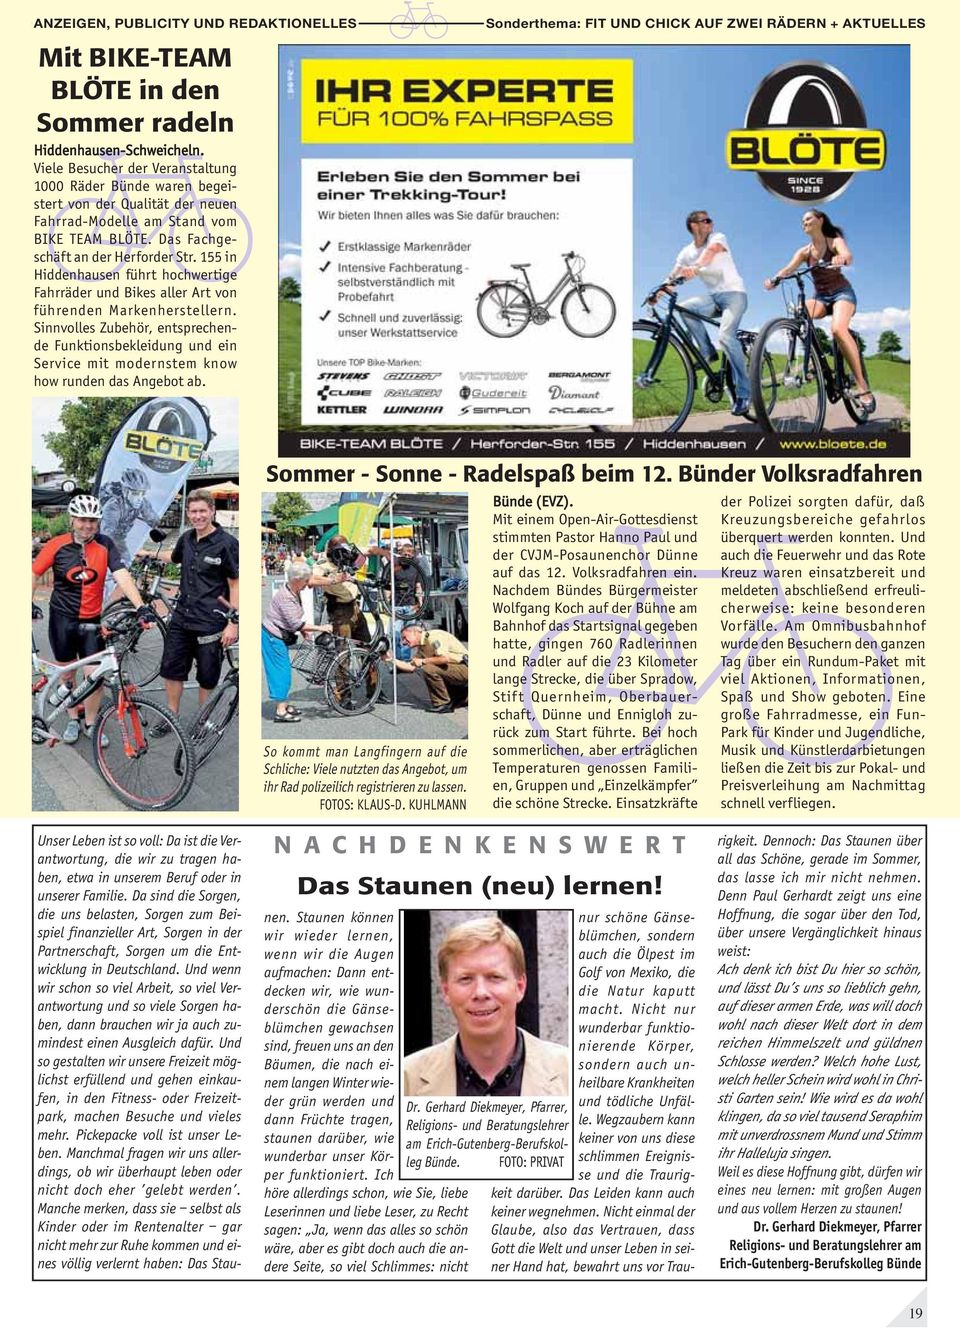 155 in Hiddenhausen führt hochwertige Fahrräder und Bikes aller Art von führenden Markenherstellern.